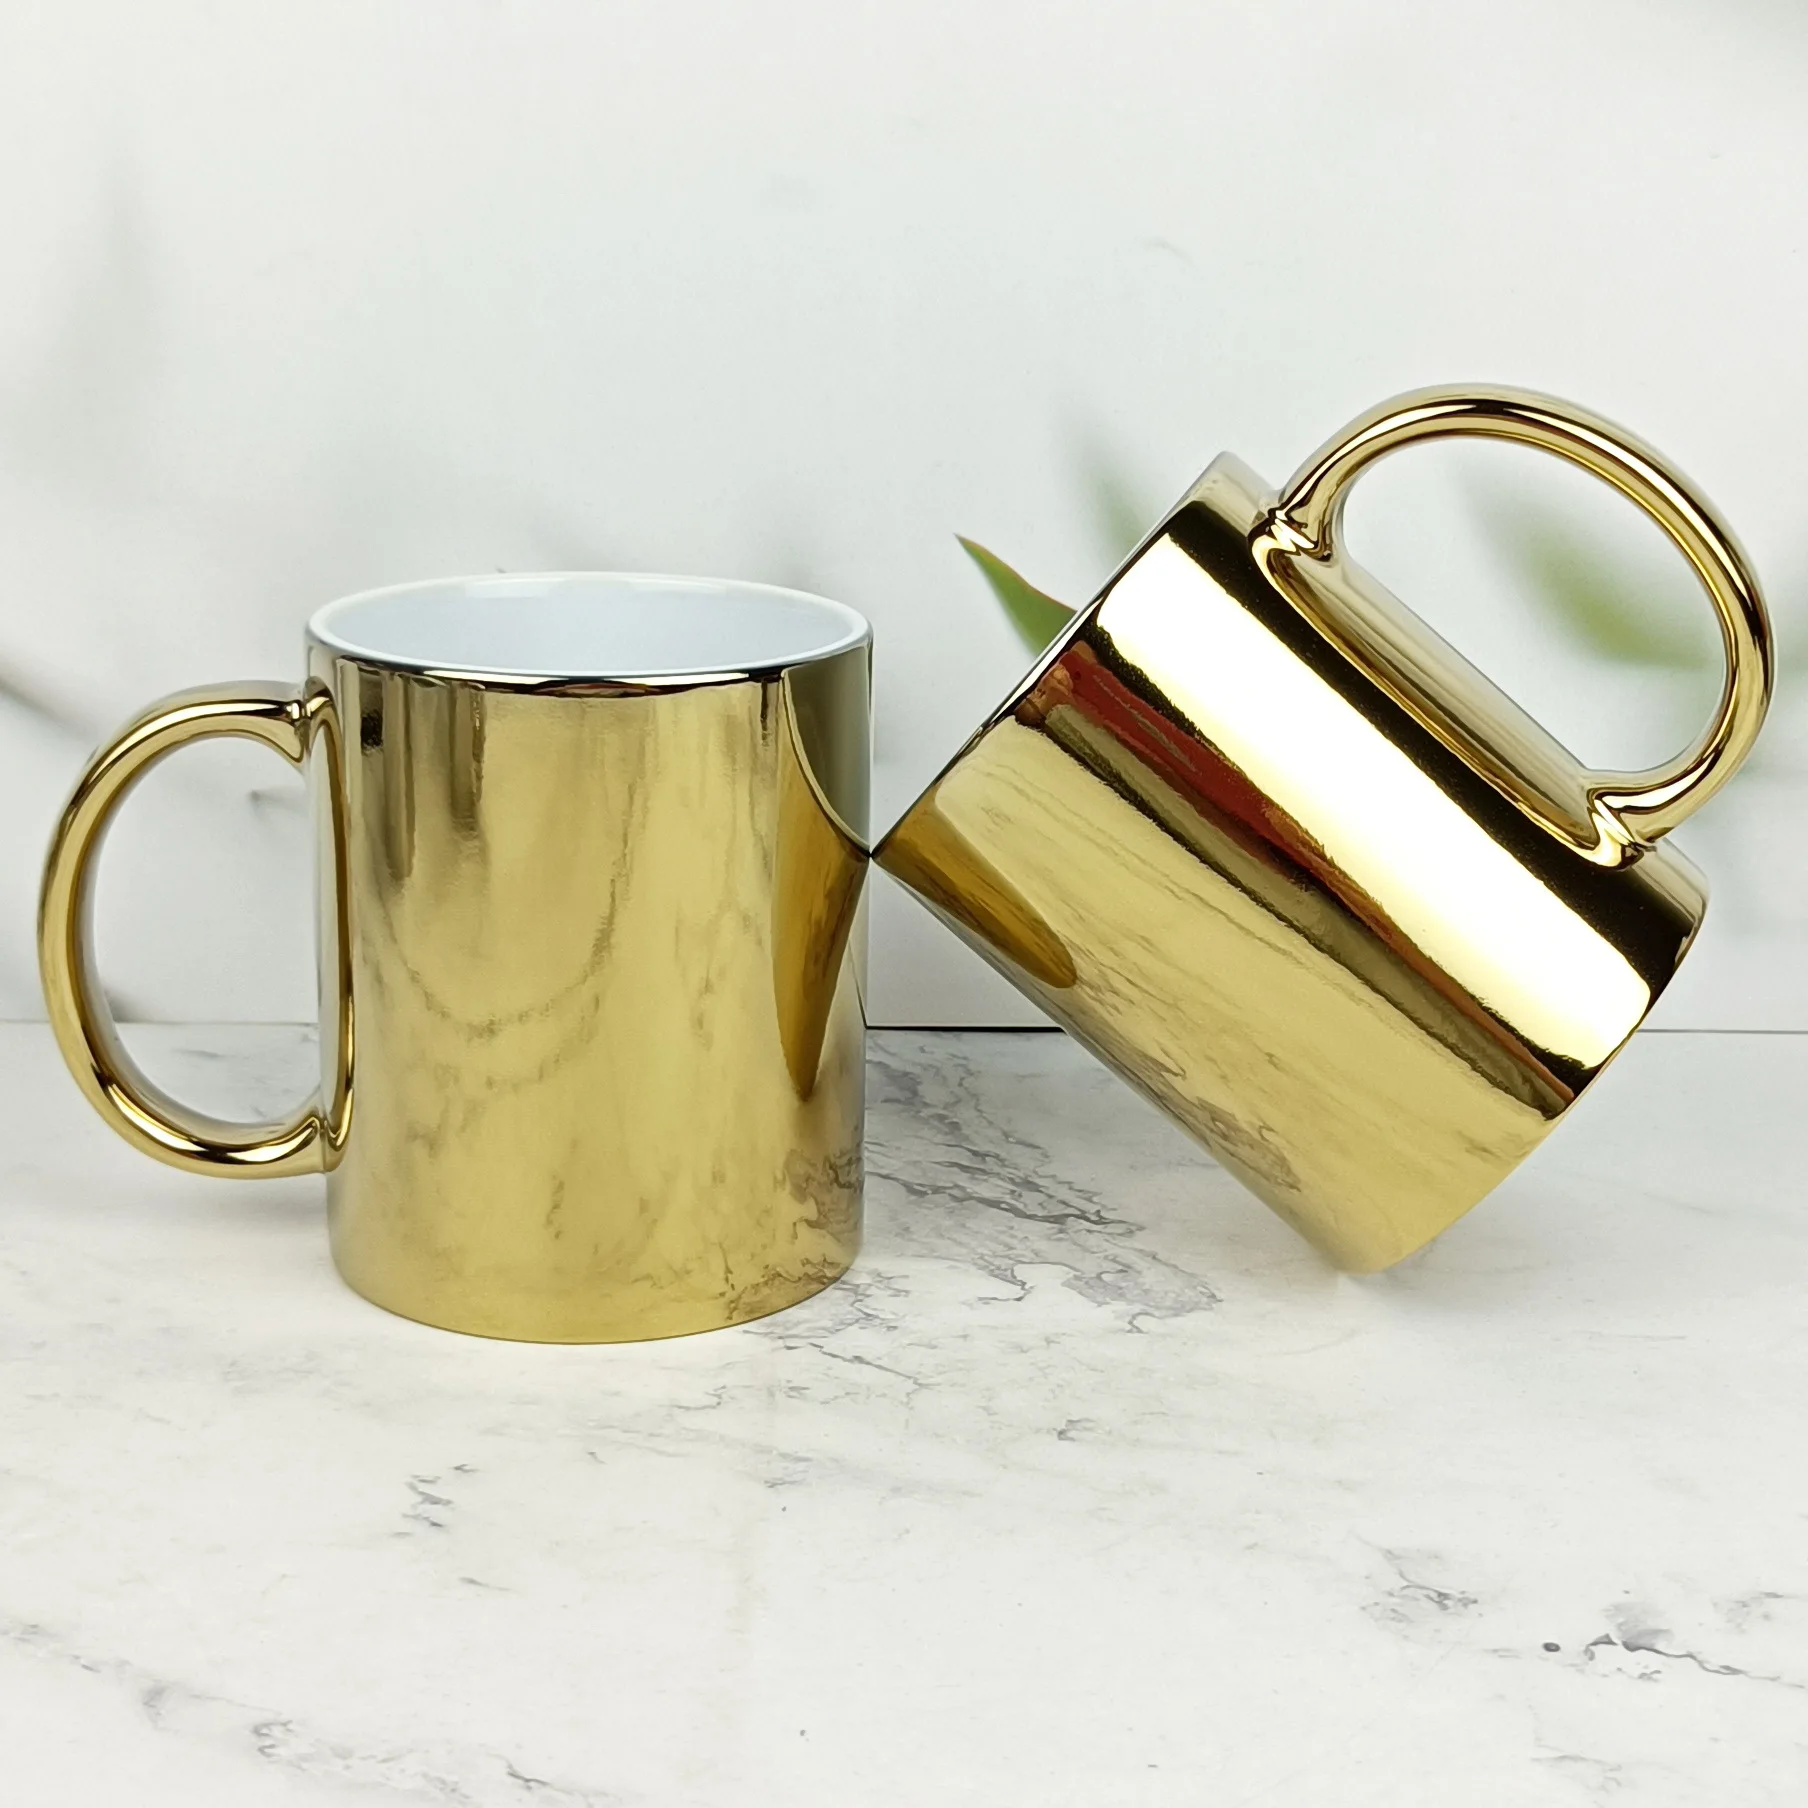 Wholesale Custom Cup 11oz White Sublimation Round Full Plain Mug Personalised Ceramic Gold Handle Coffee Mug for Drinking